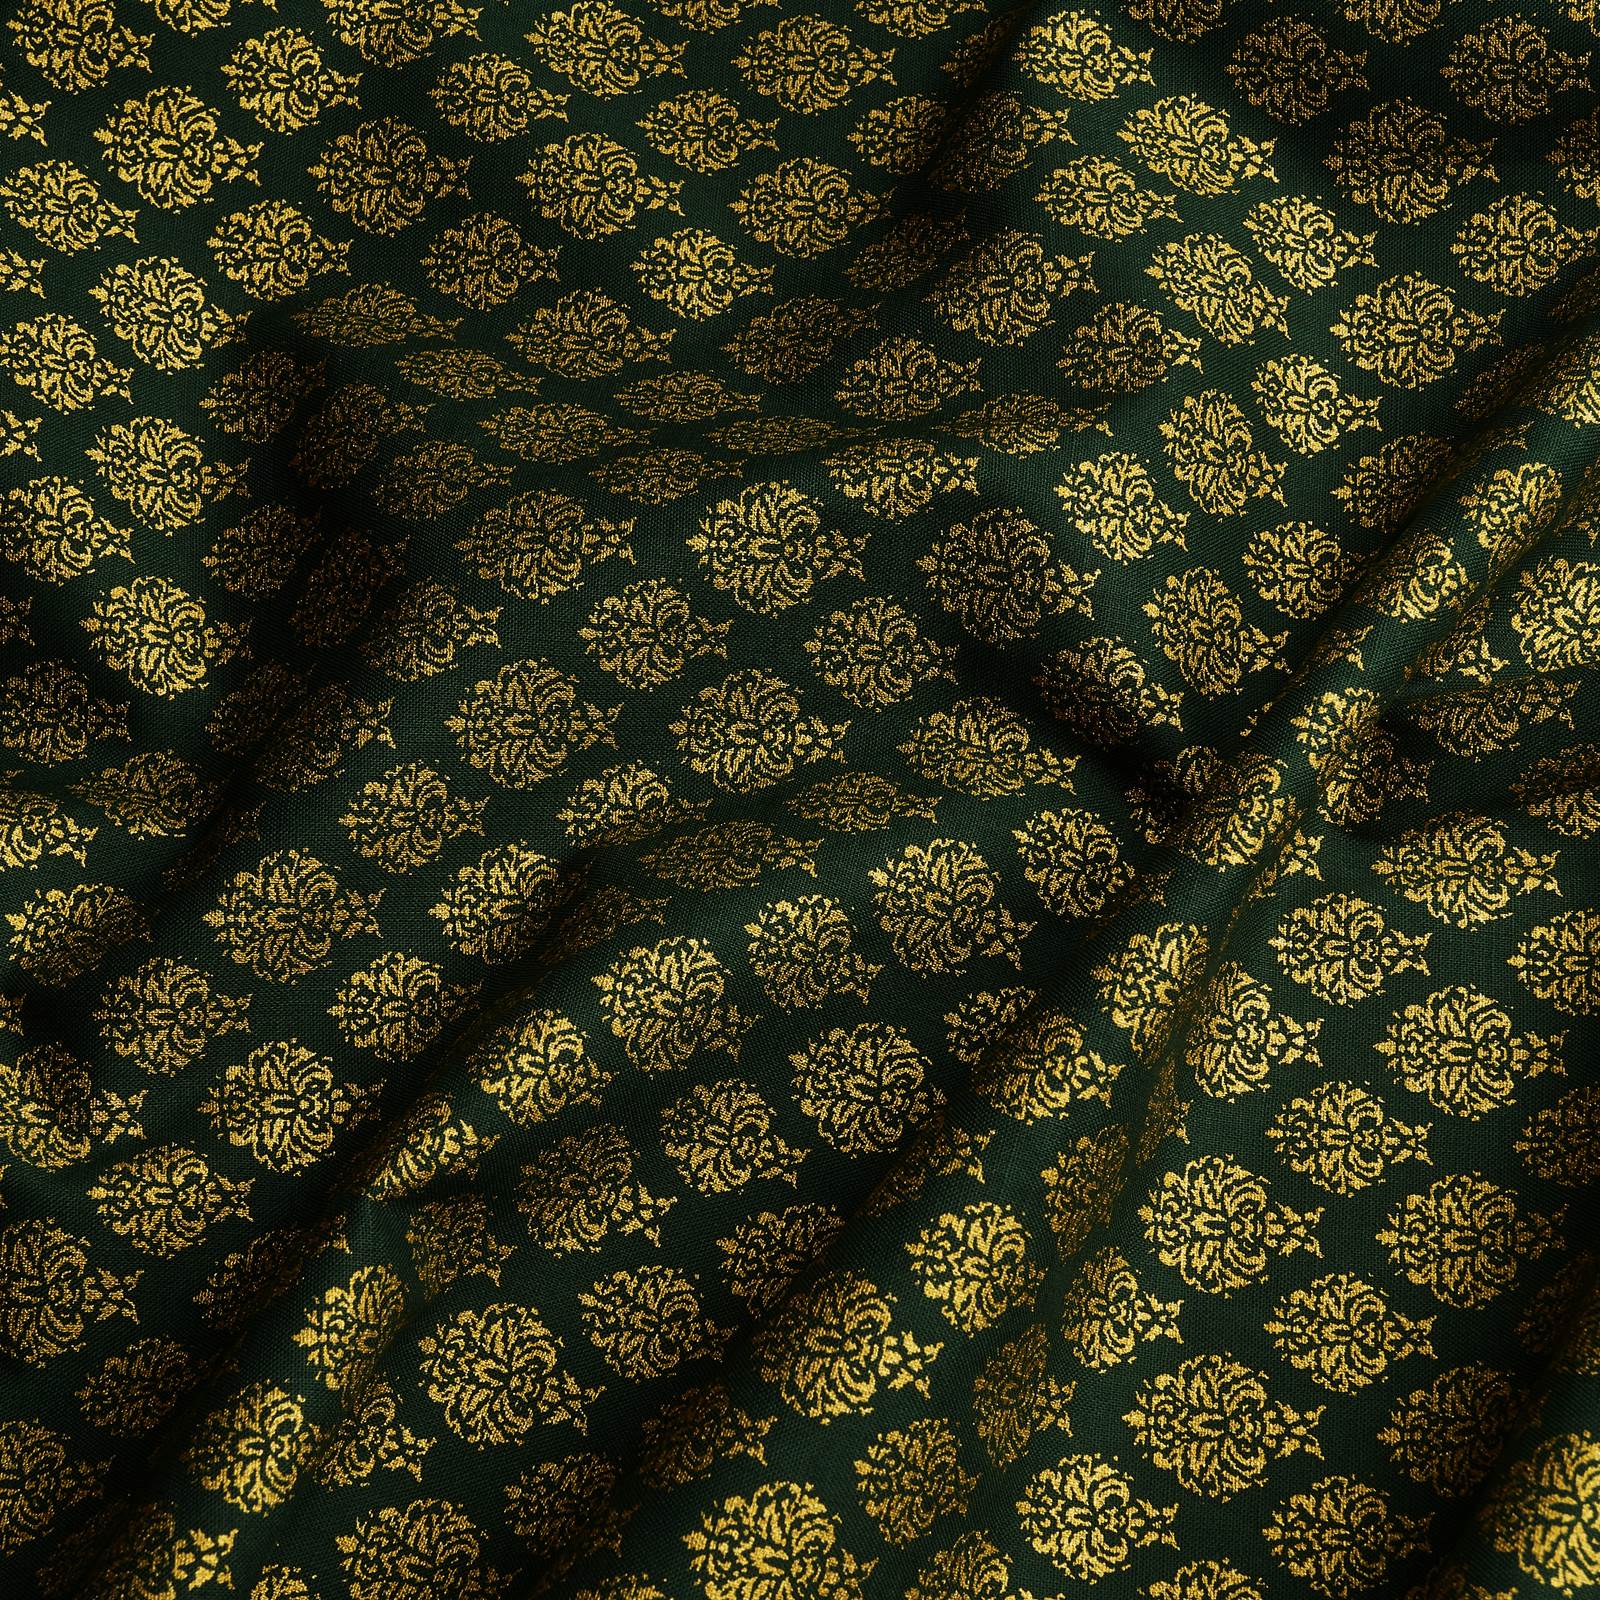 Ornamento - Tecido de algodão com estampa dourada (abeto)